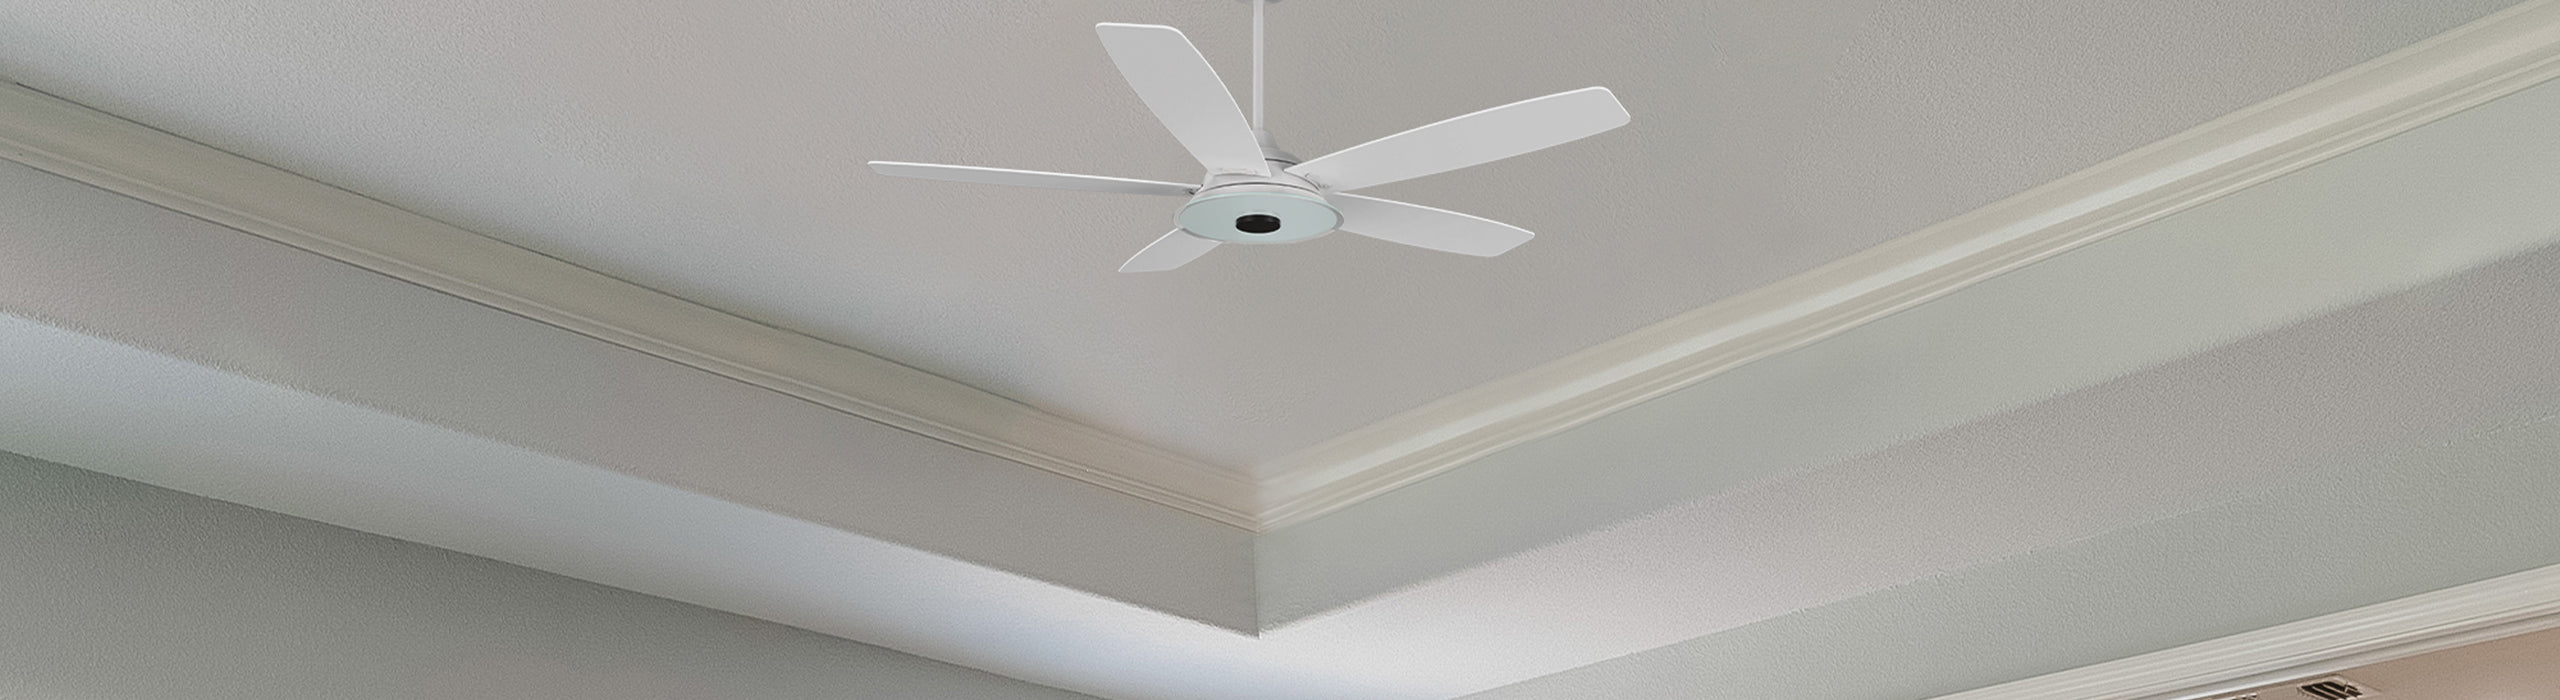 smafan smart ceiling fan  with clearance